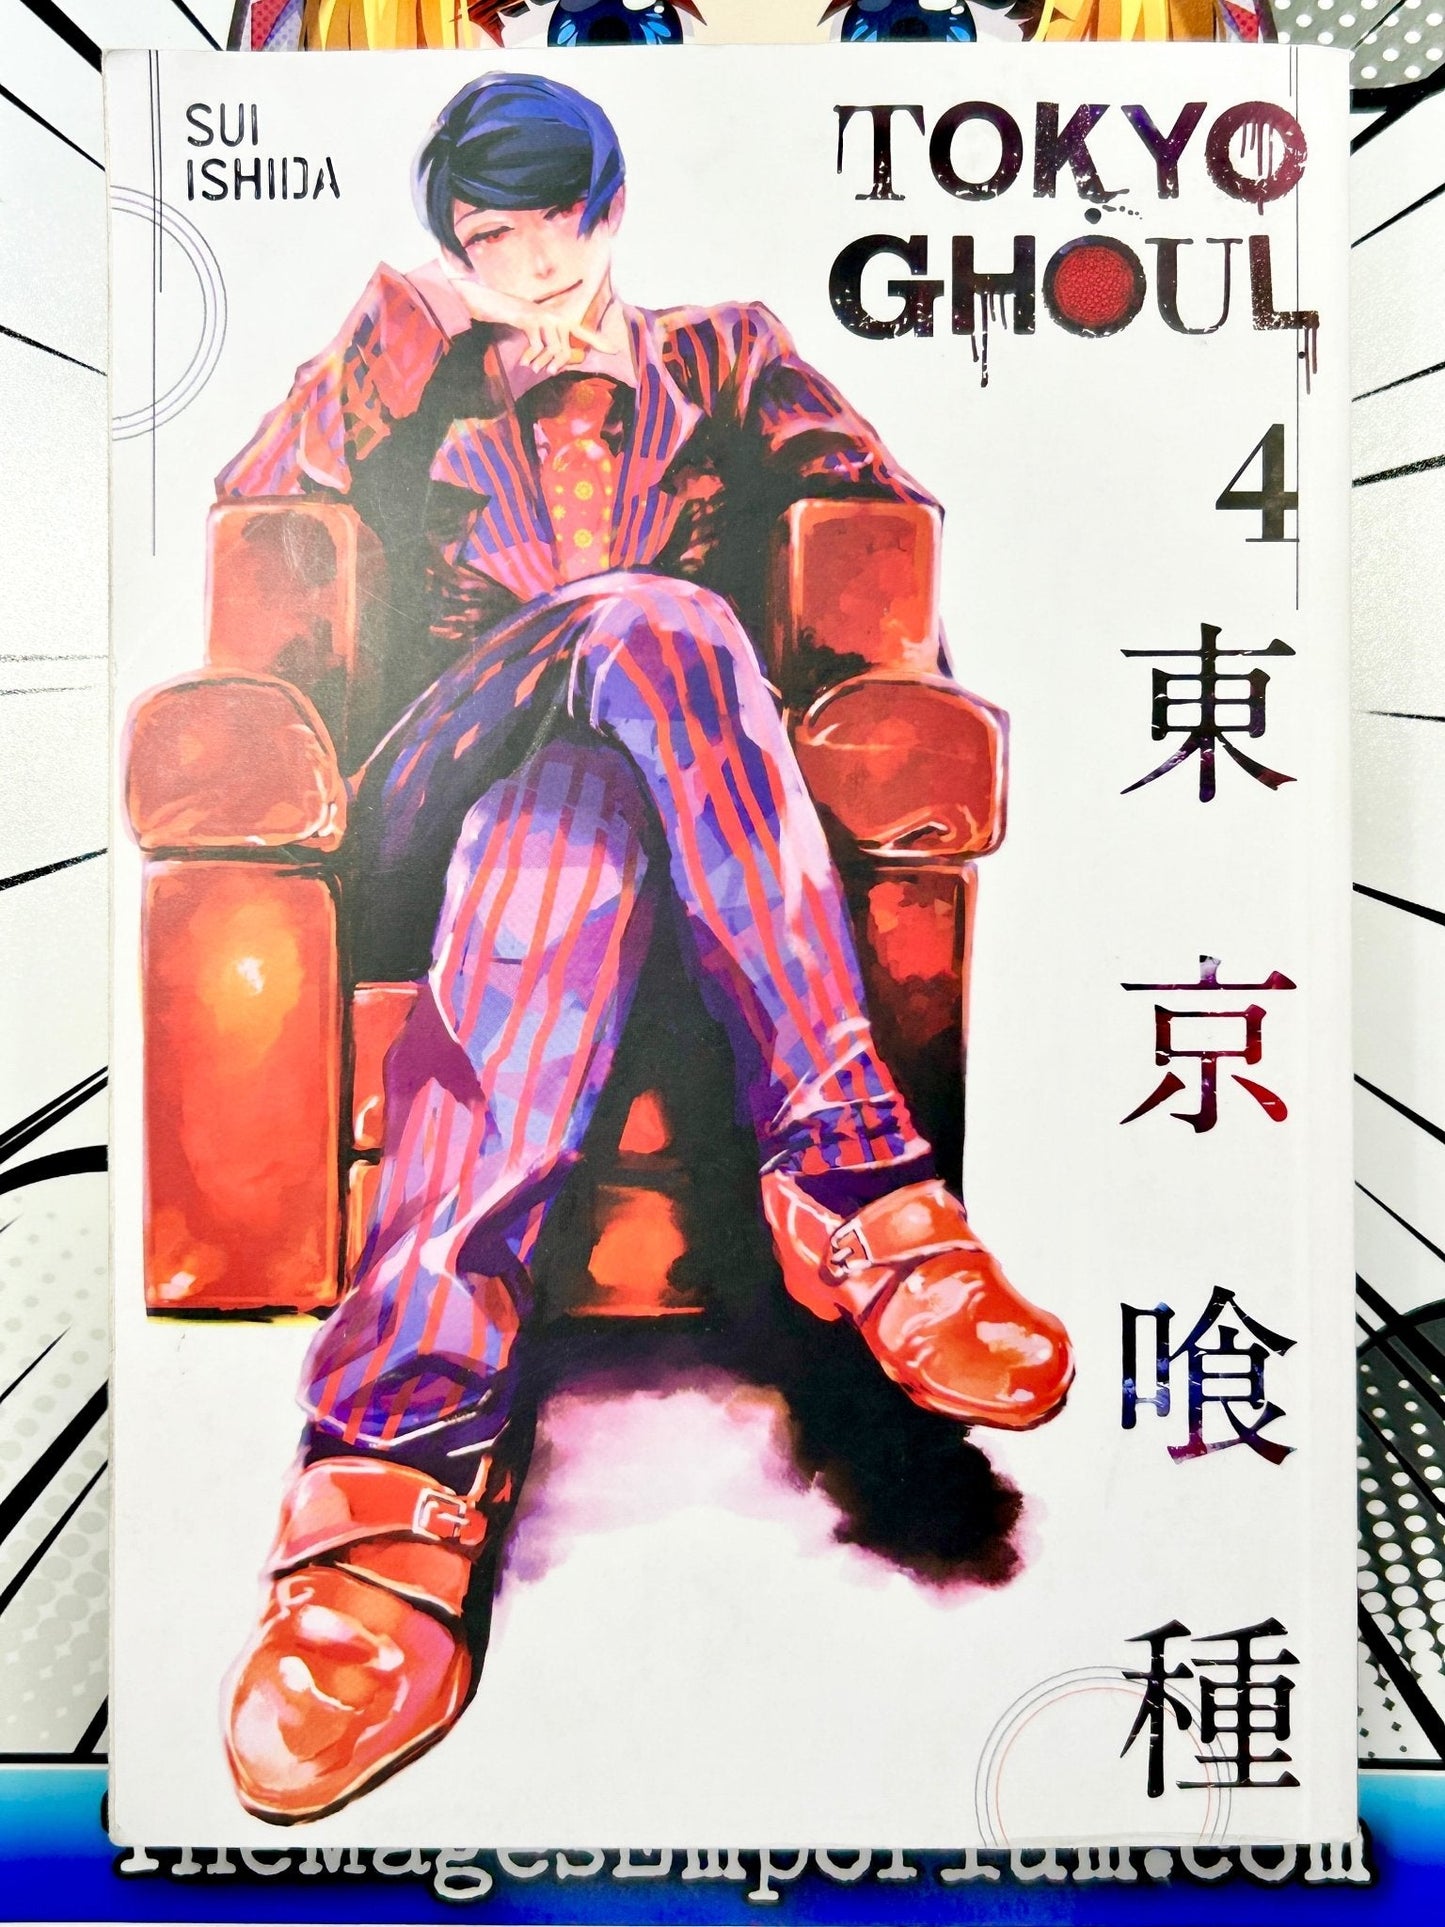 Tokyo Ghoul Vol 4